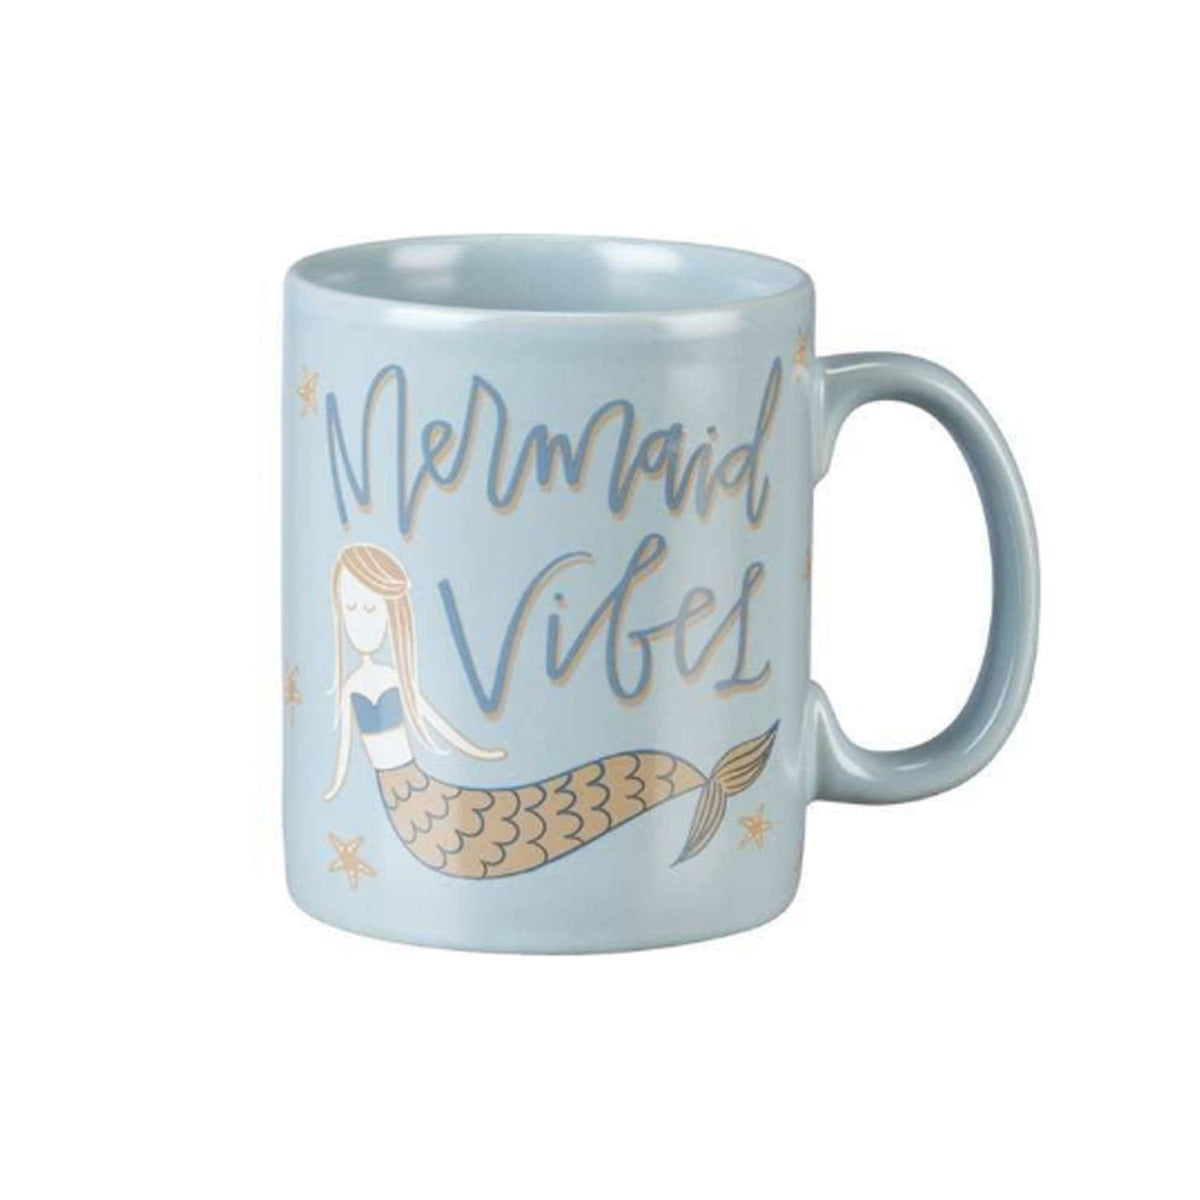 Mermaid Vibes Mug - Mugs Cups & Serveware